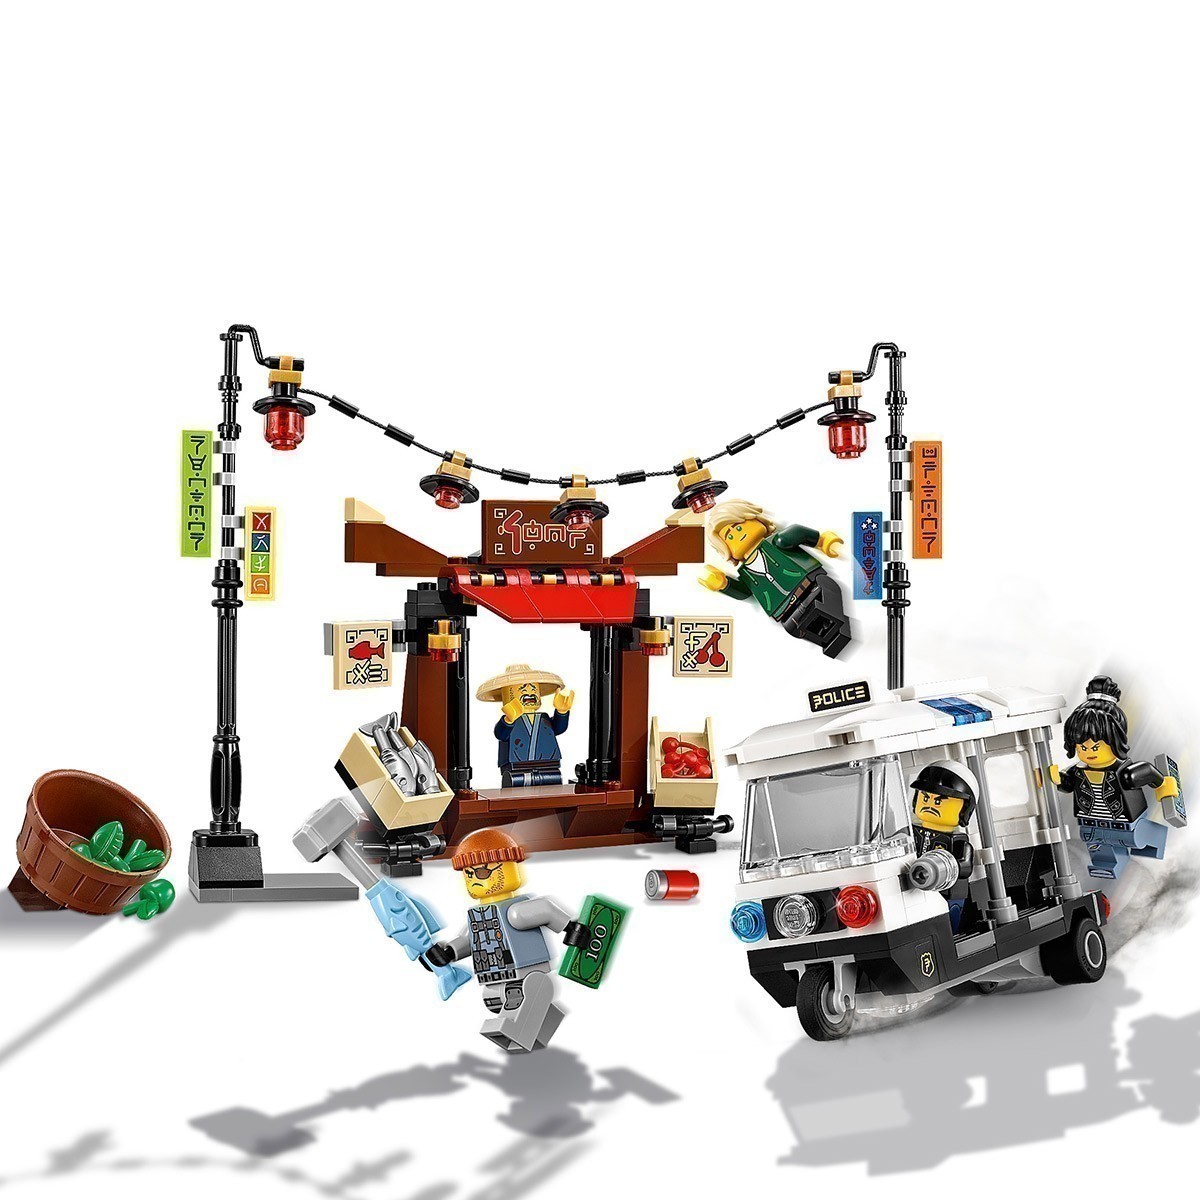 LEGO - The Ninjago Movie 70607 - Ninjago City Chase